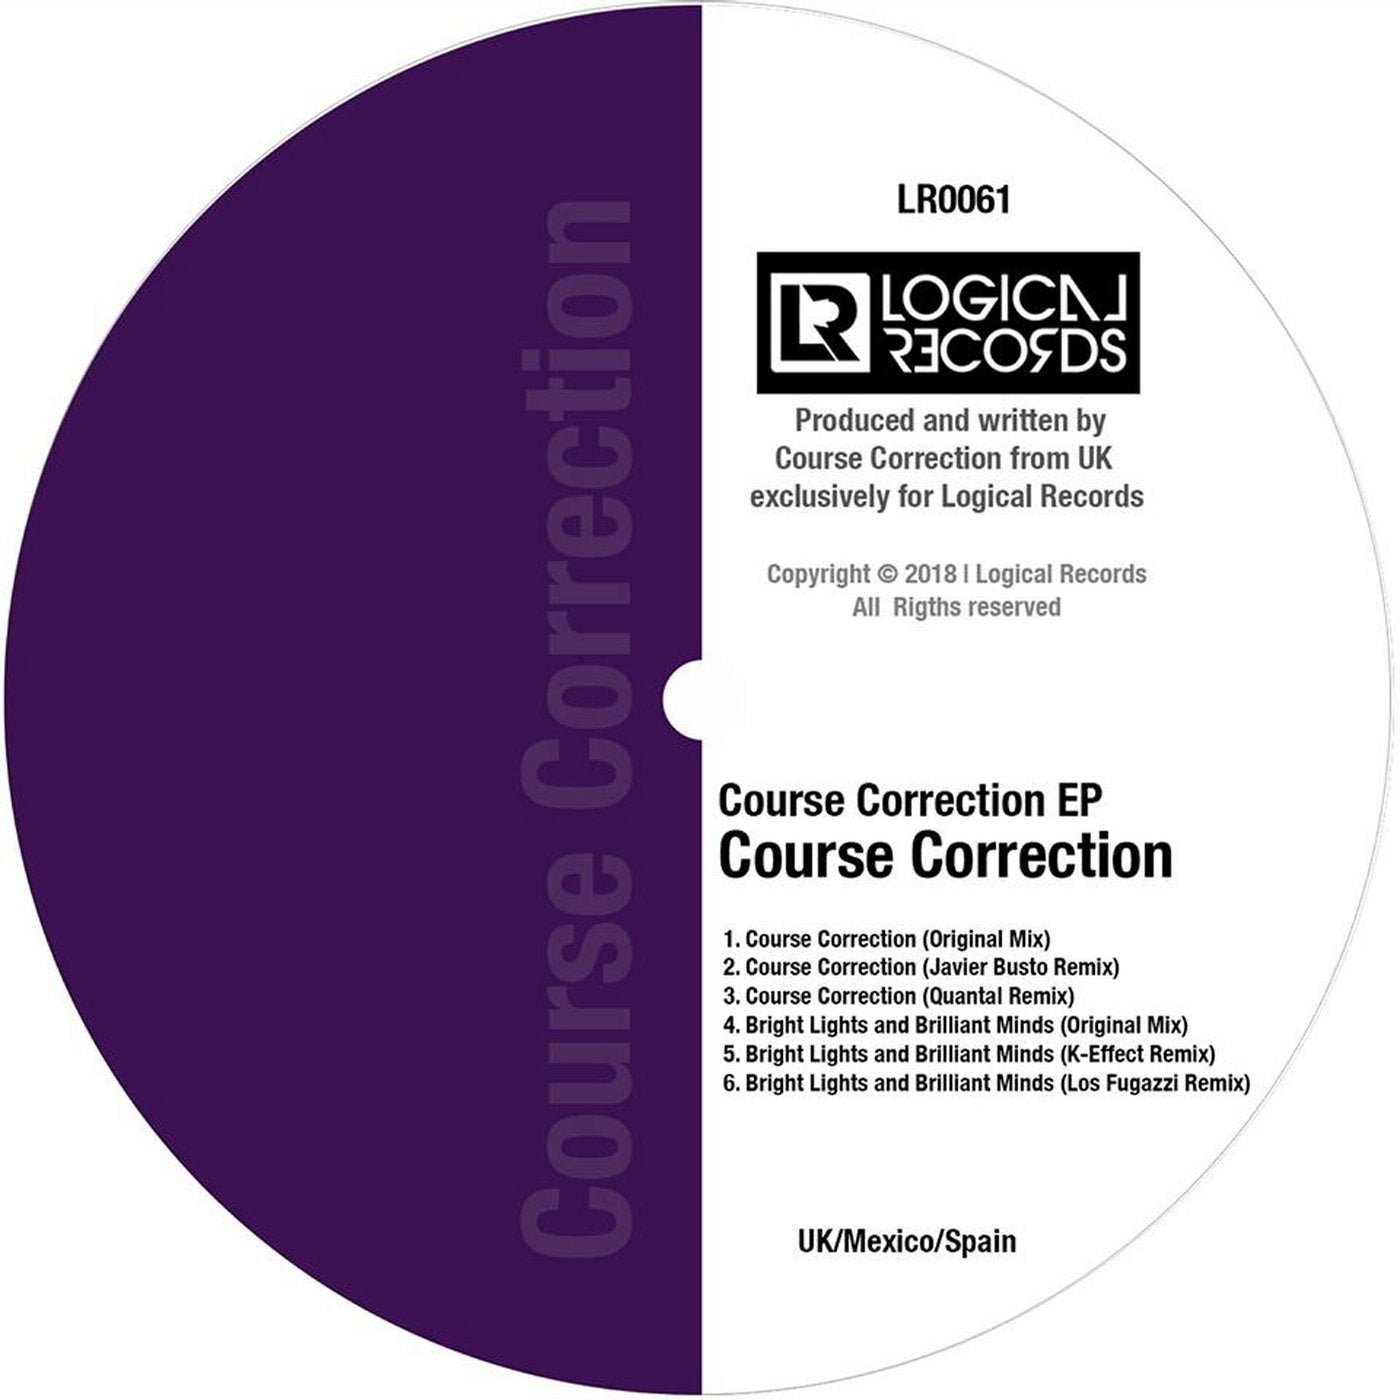 Course Correction EP